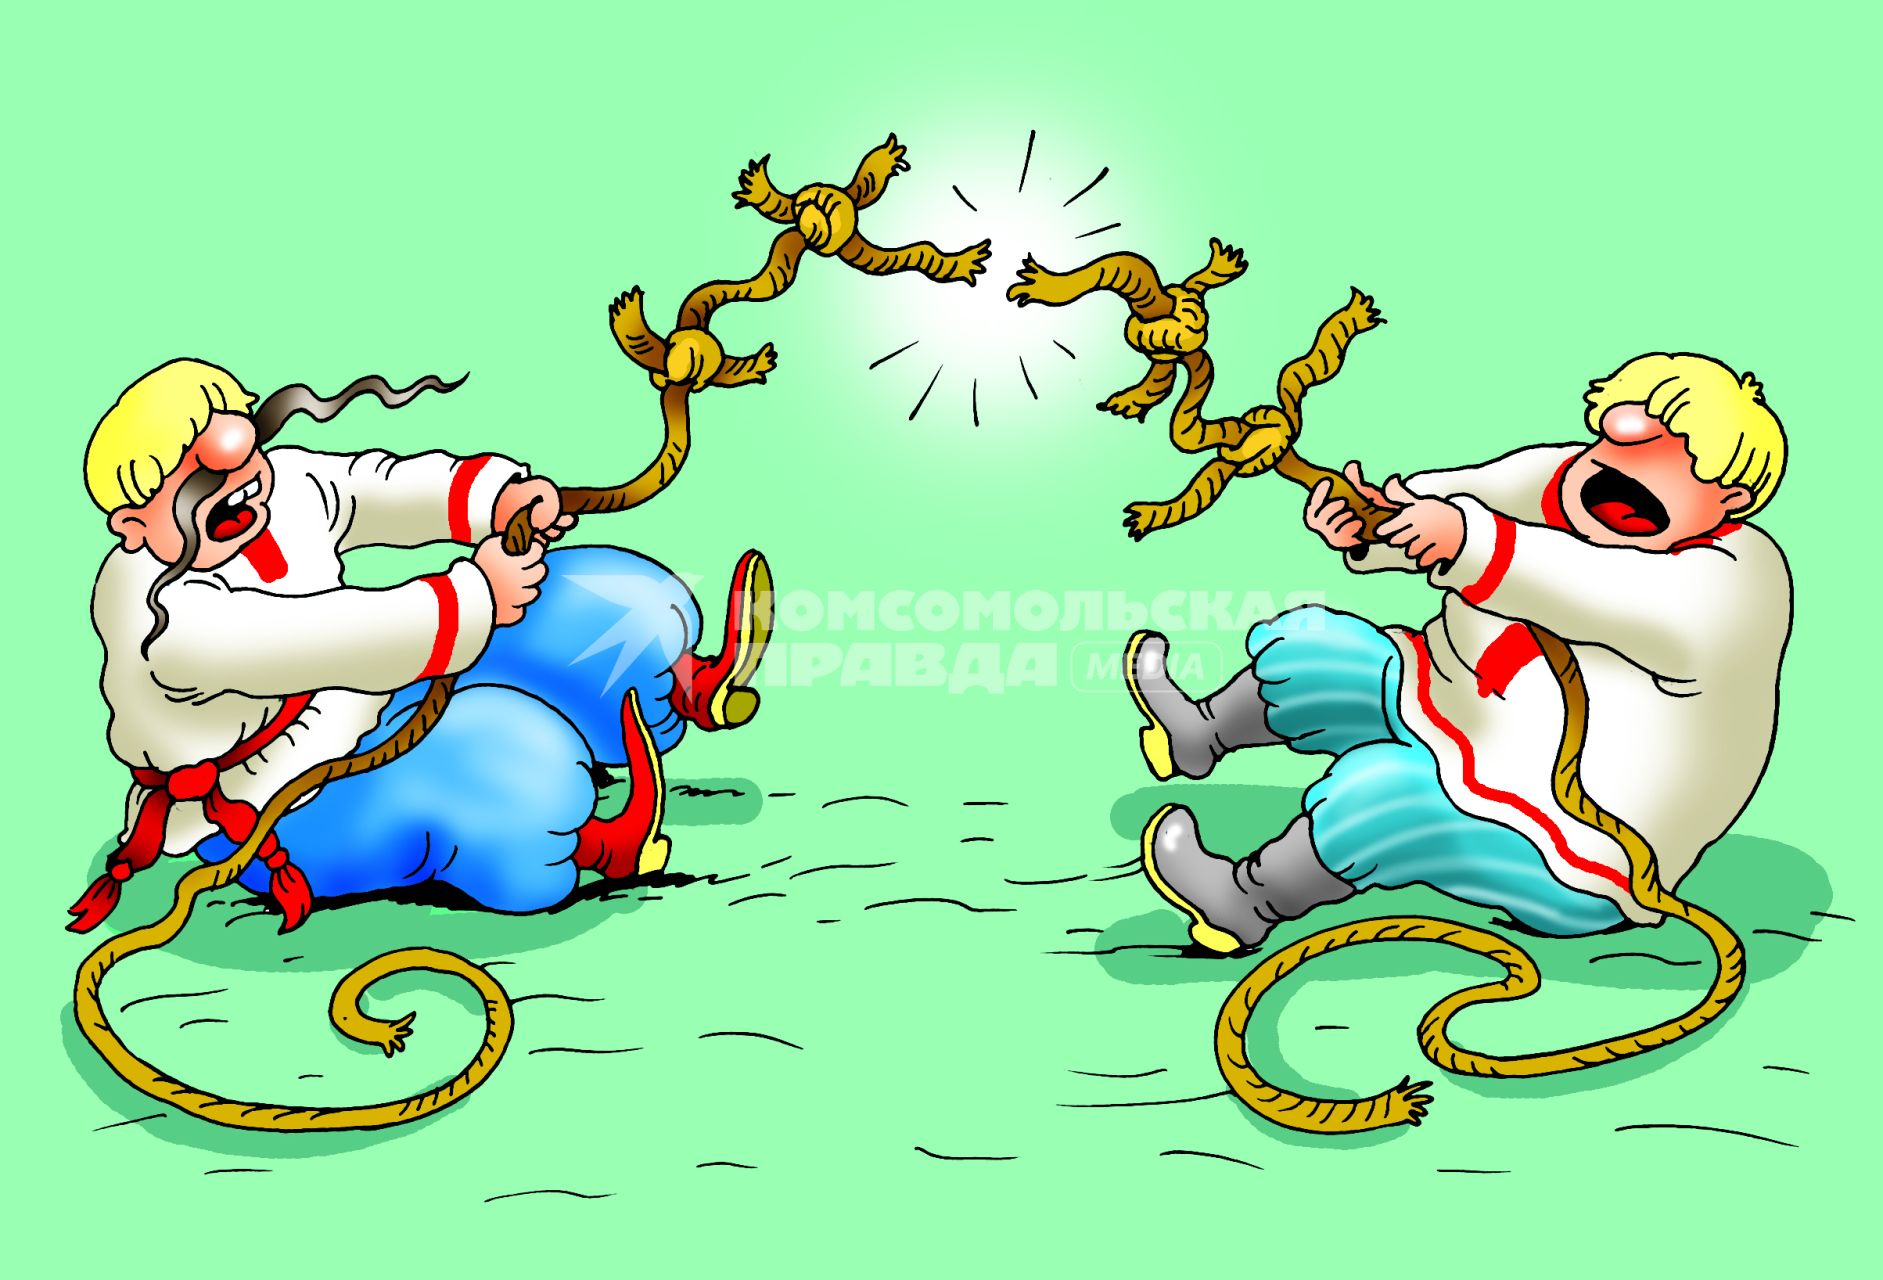 Карикатура на тему разрыва дипломатический отношений между Россией и Украиной.